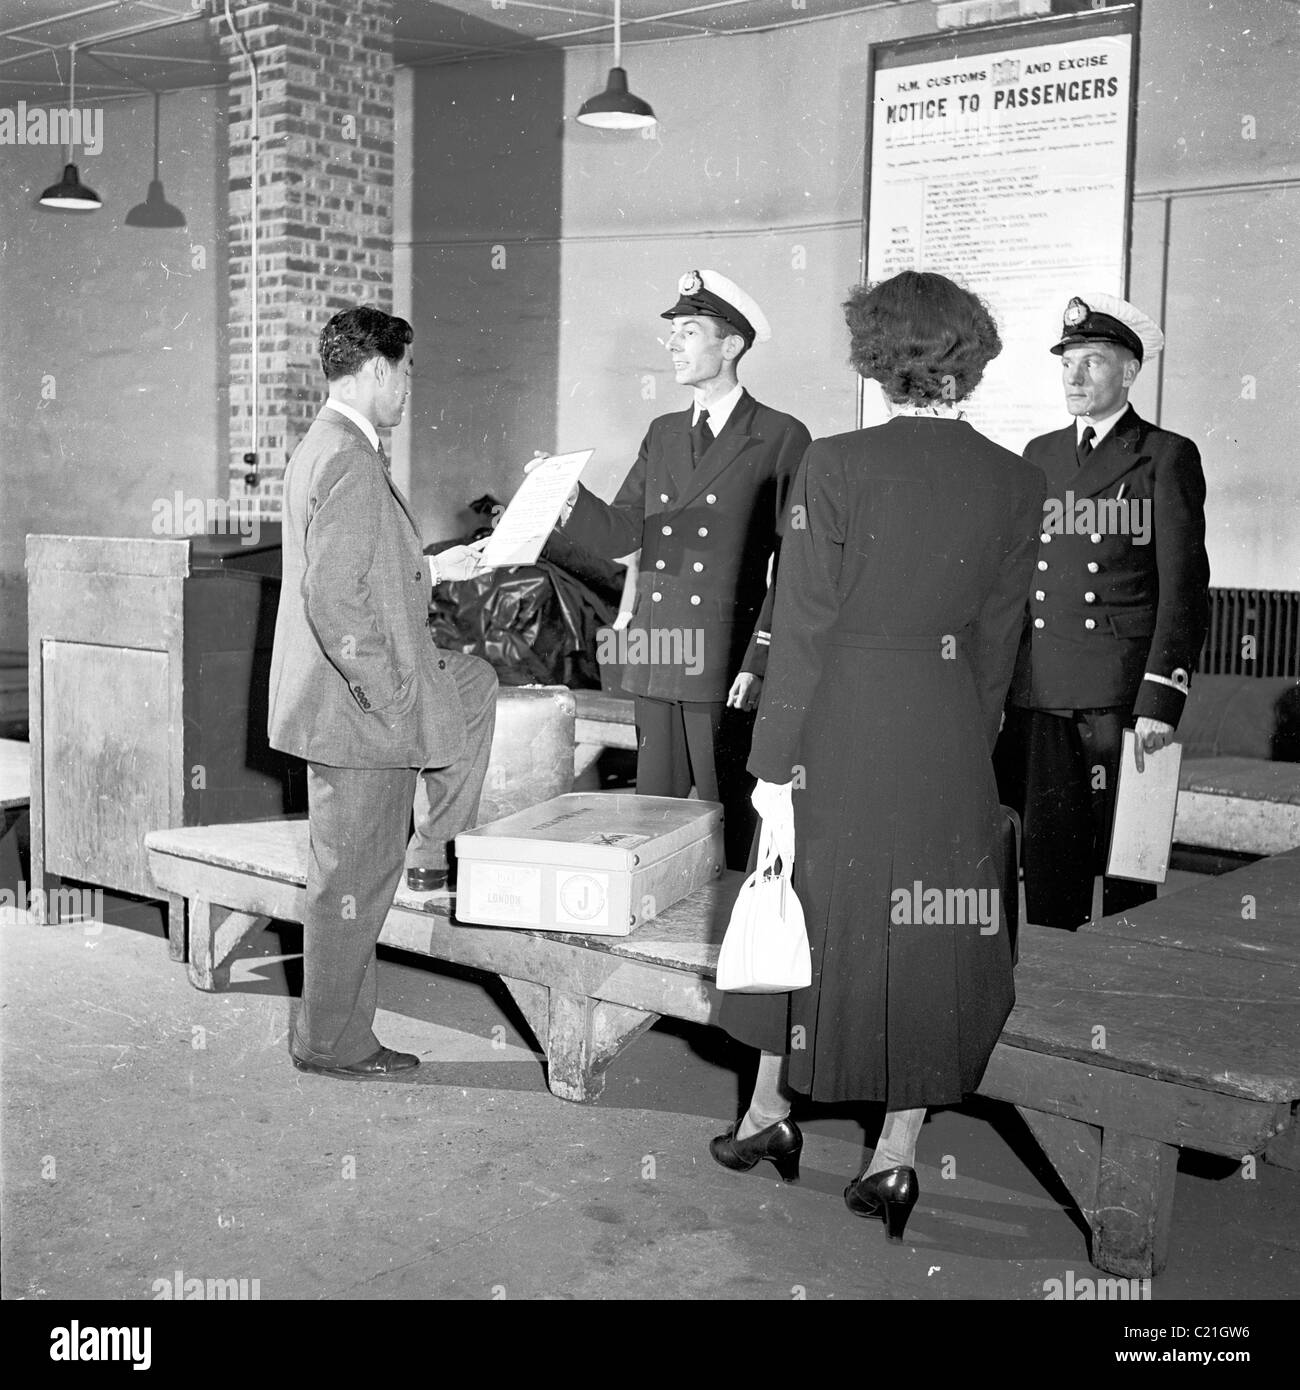 1950, historisch, ein neu eingetroffener Besucher aus Übersee in Großbritannien, dem eine Nachricht von uniformierten Zollbeamten an einer Gepäckkontrolle, England, gezeigt wurde. Stockfoto